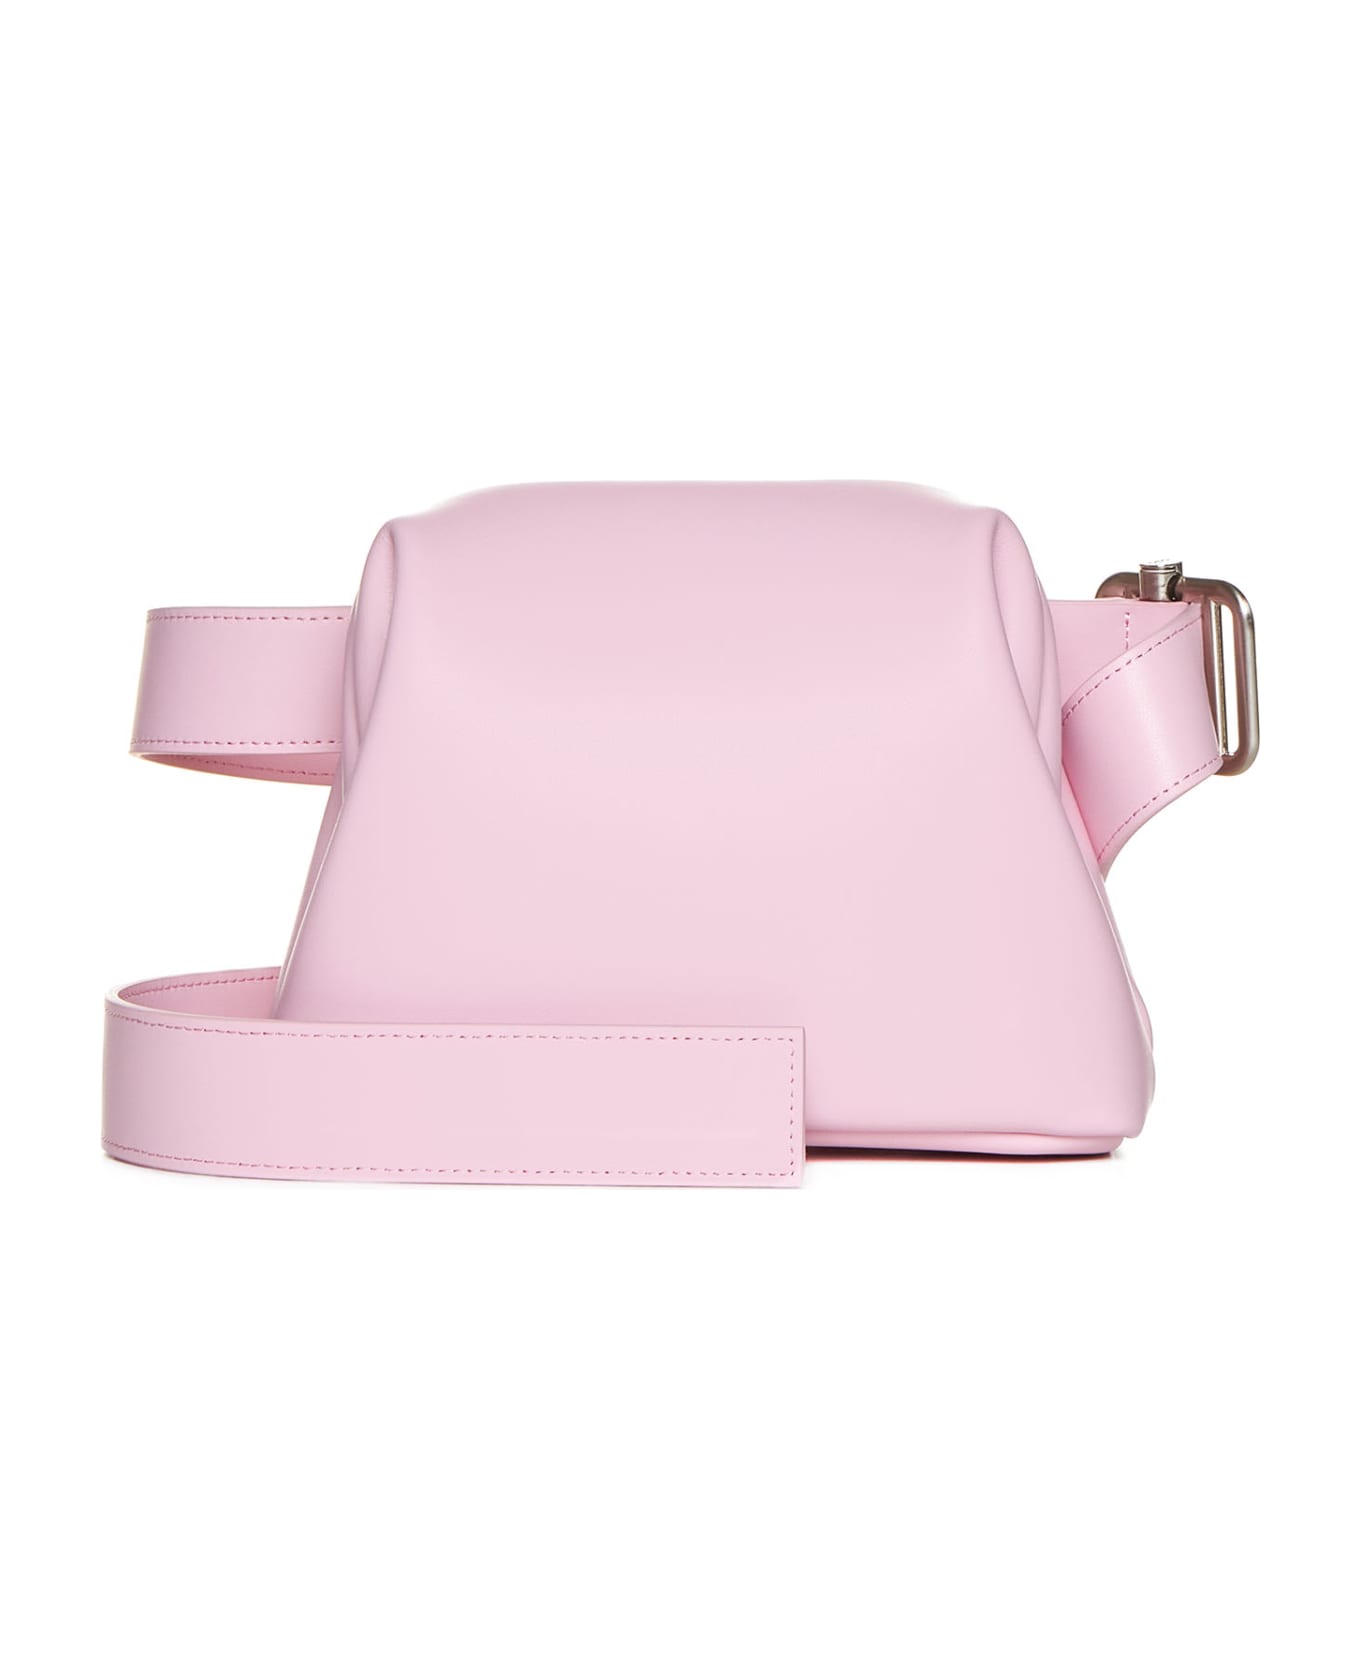 OSOI Shoulder Bag - Baby pink ベルトバッグ